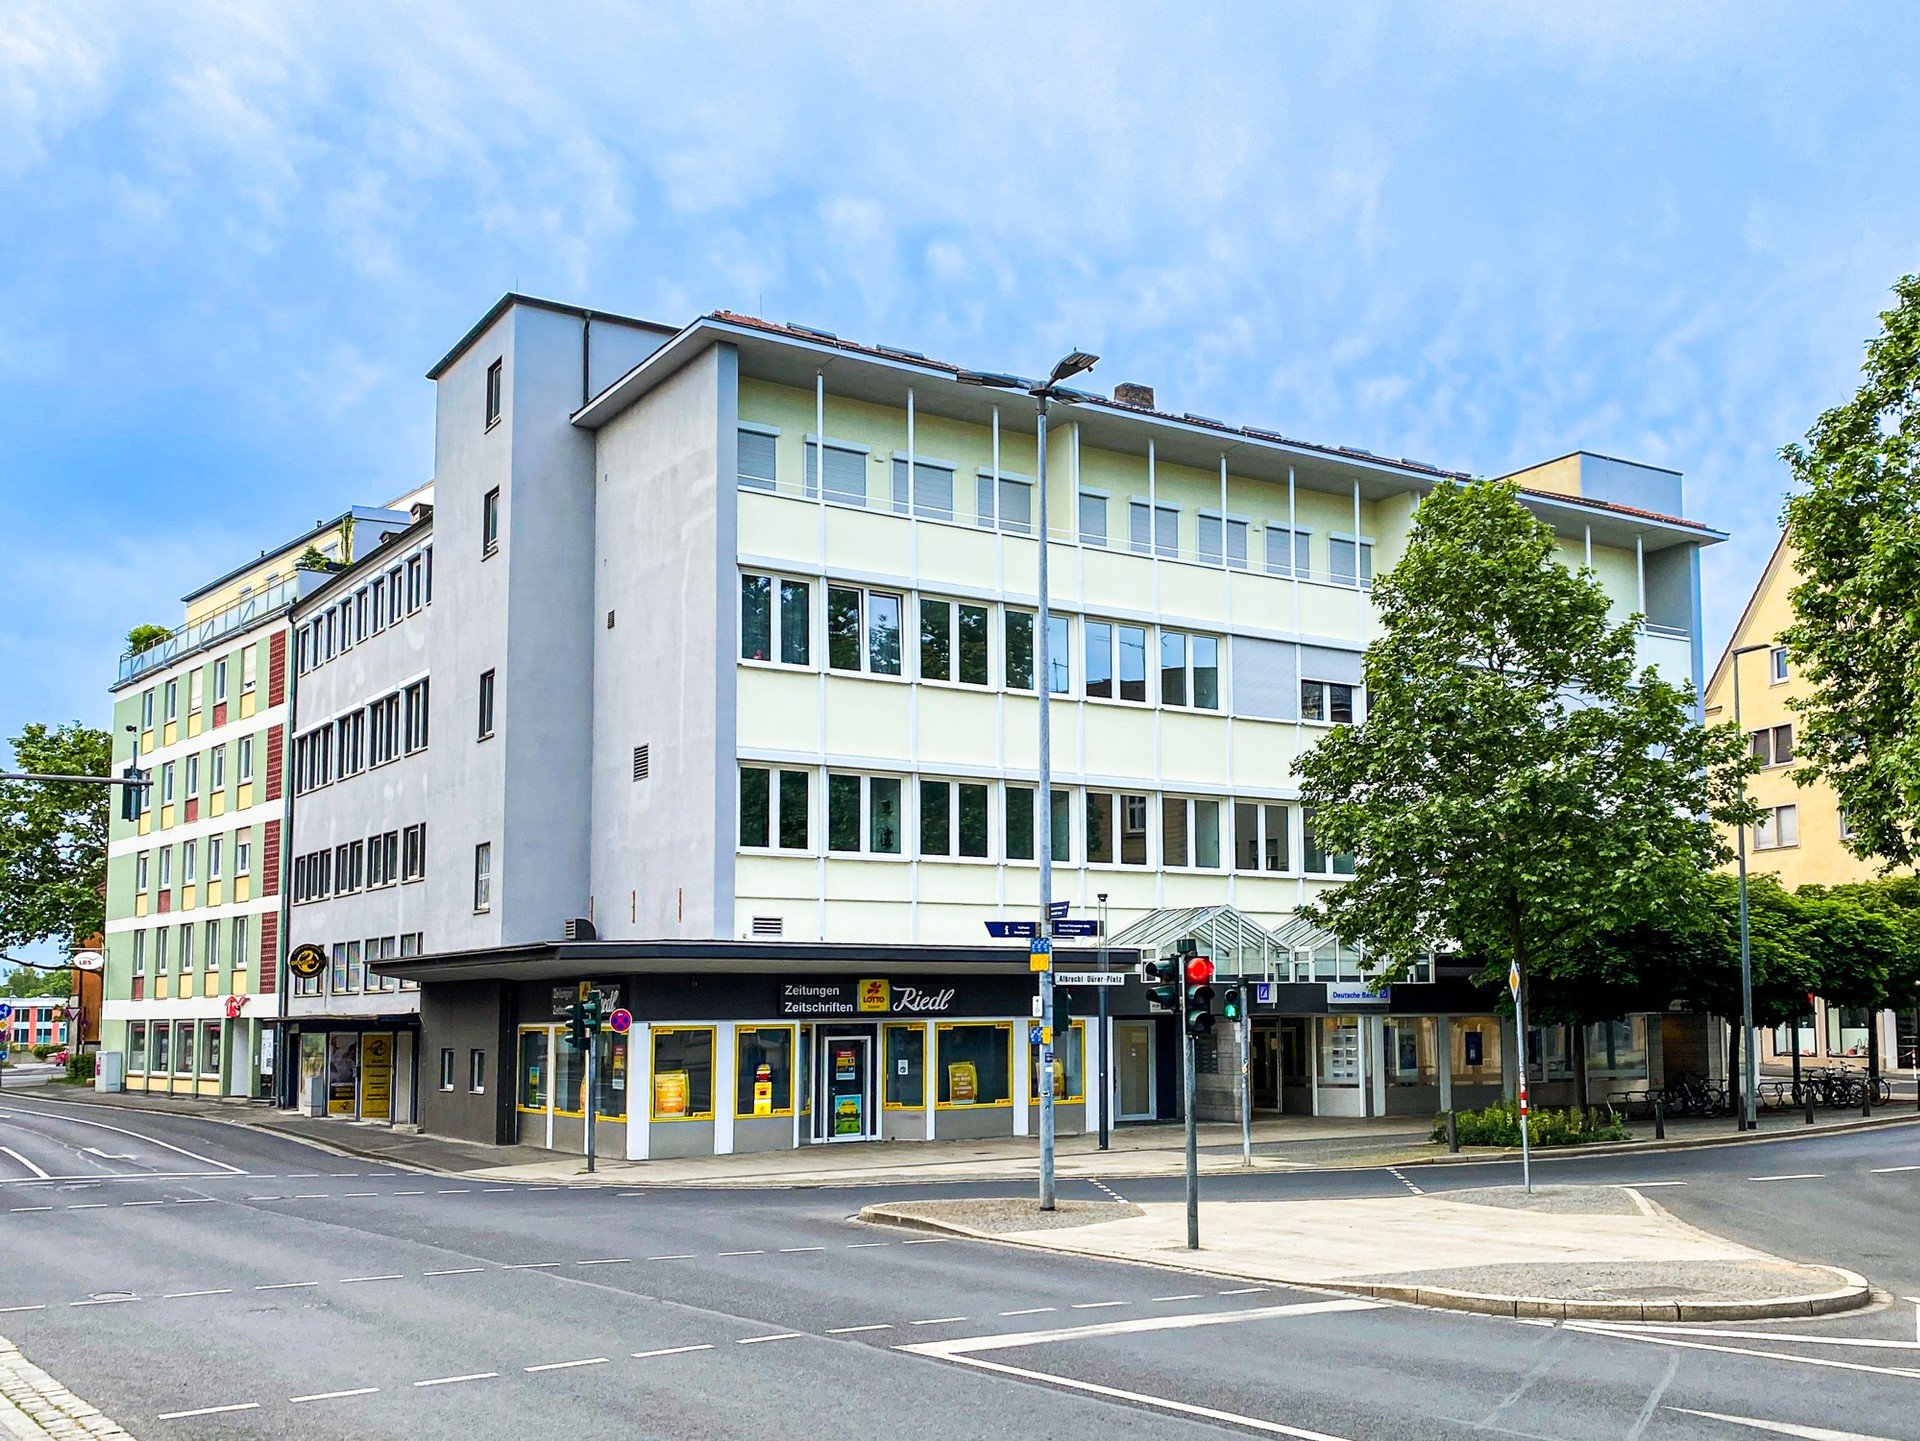 Investment / Wohn- und Geschäftshäuser in Würzburg - Ansicht - Albrecht - Dürer - Platz